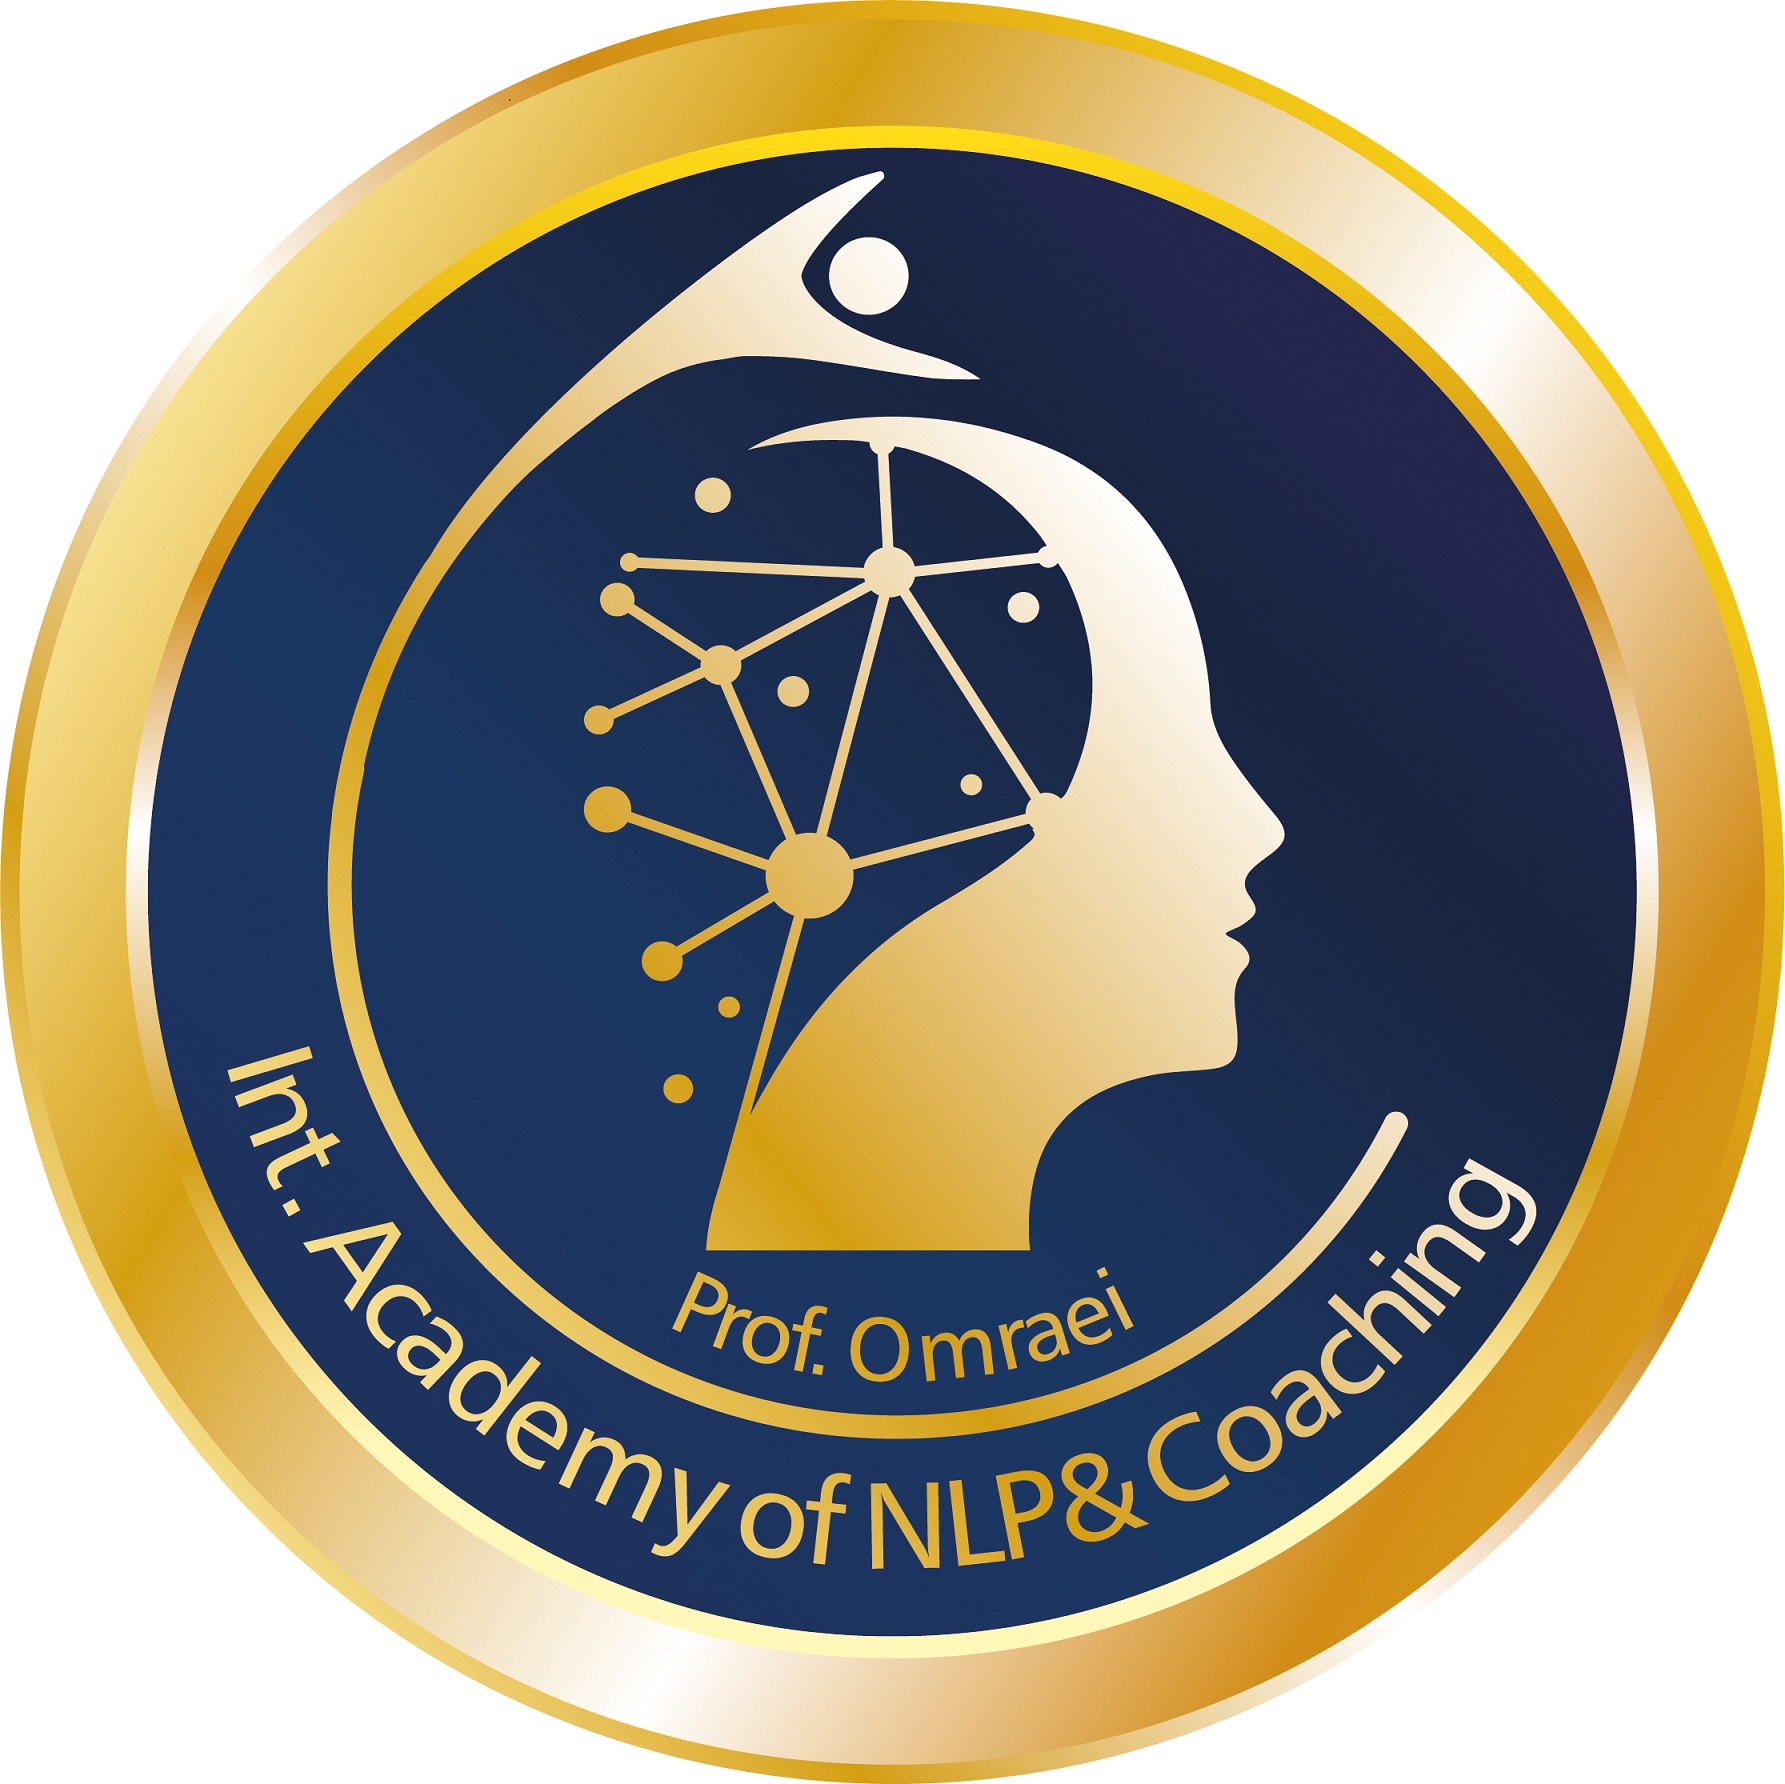 Academy of NLP& Coaching Prof. Omraie